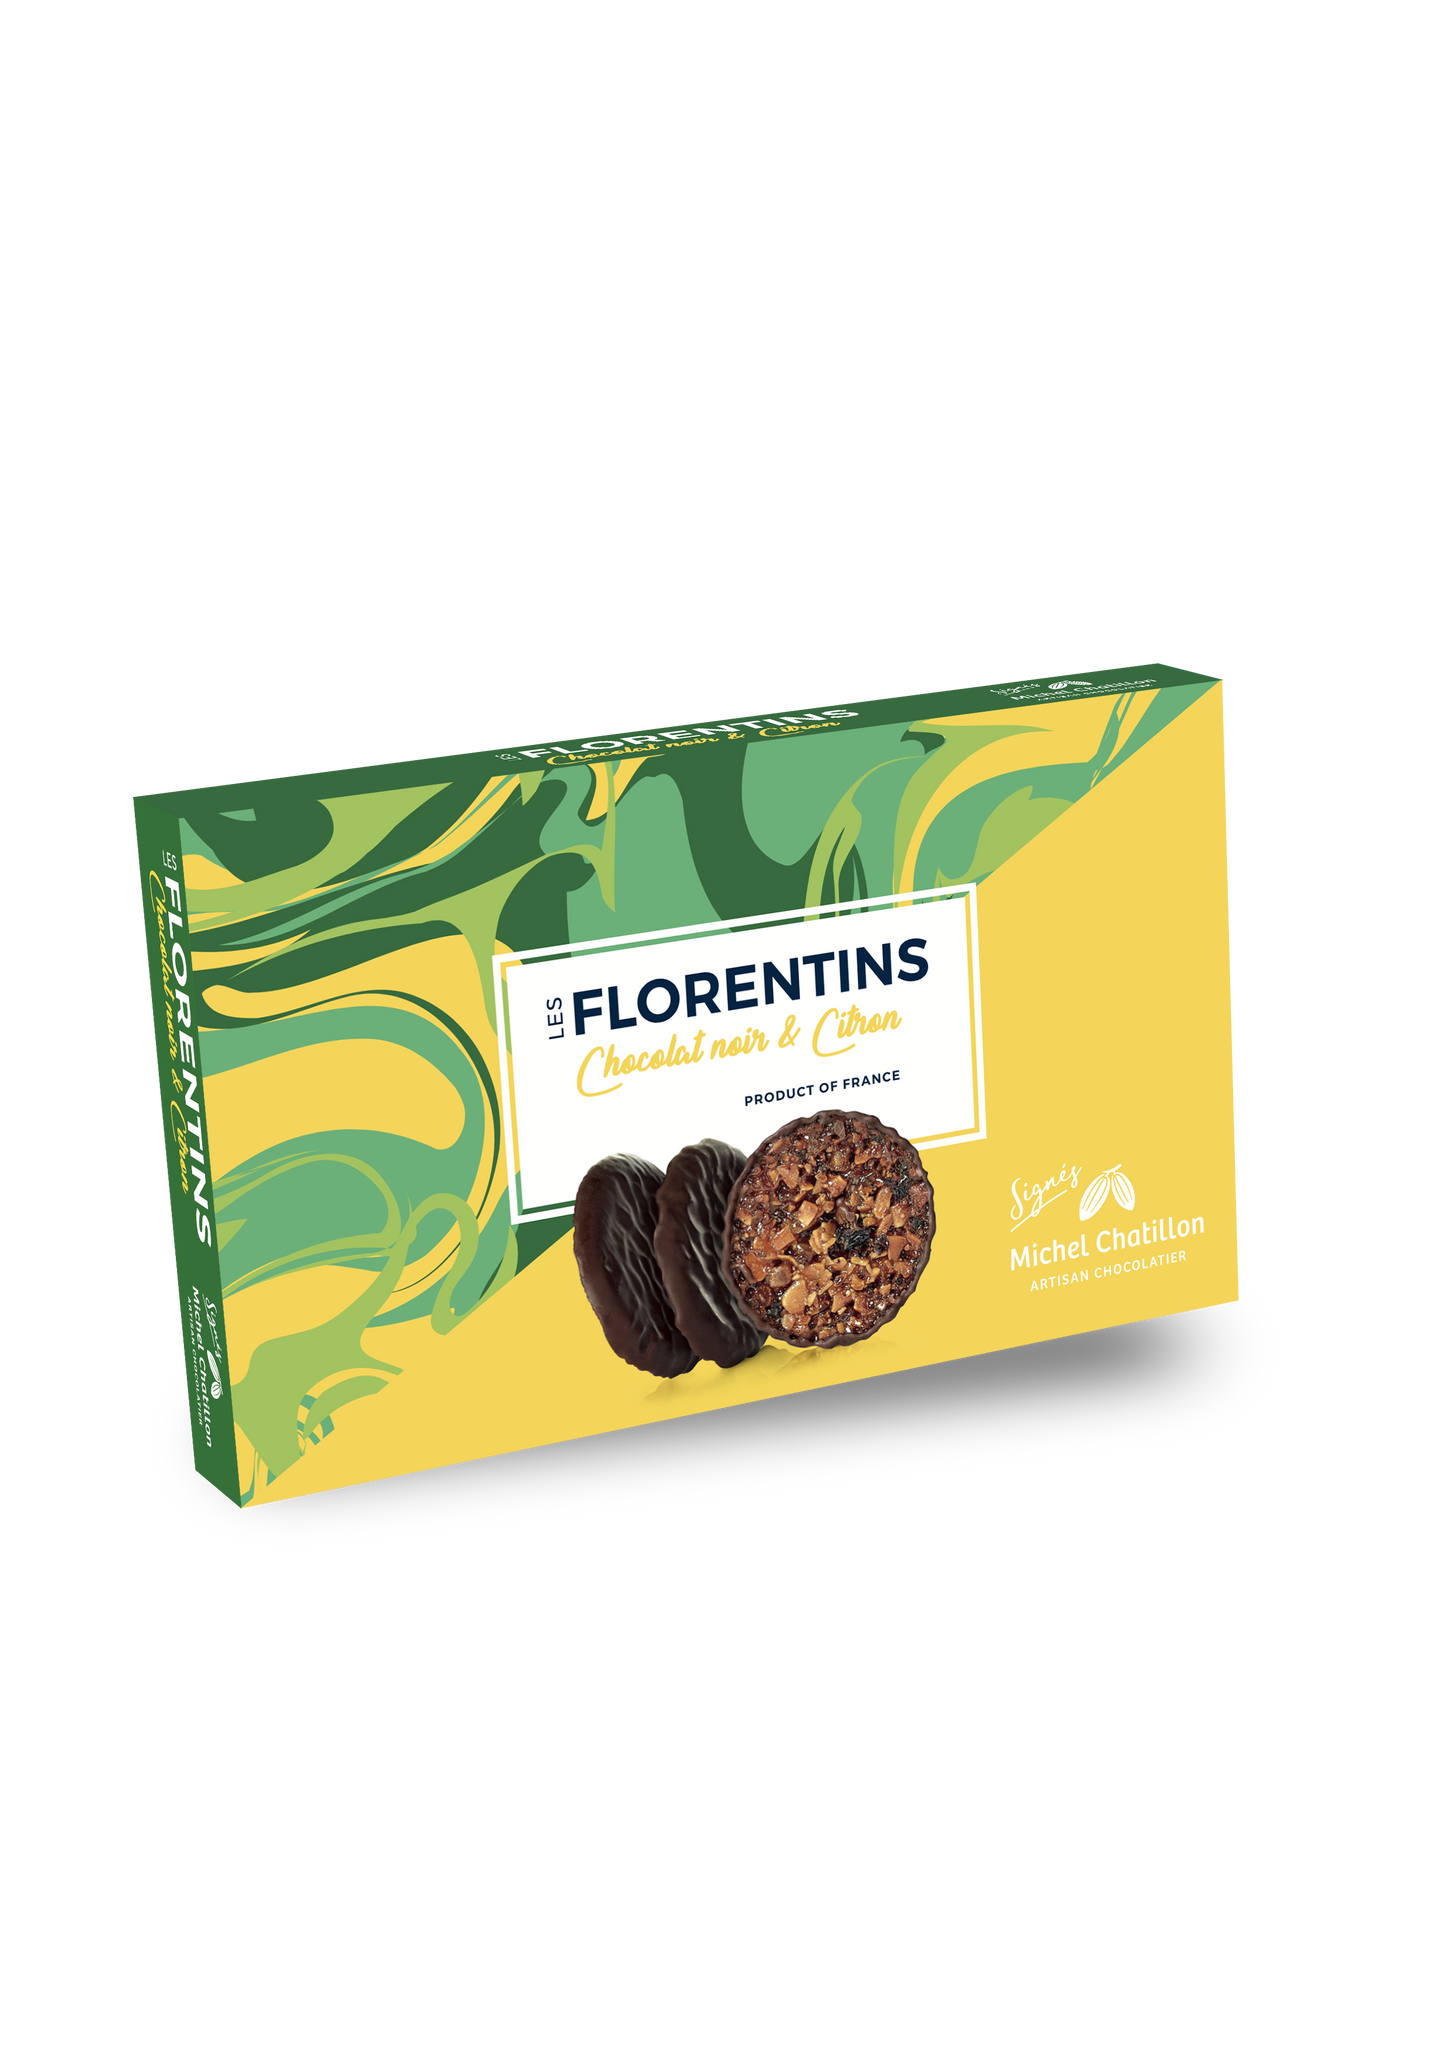 Florentins - Citrus and Chocolate